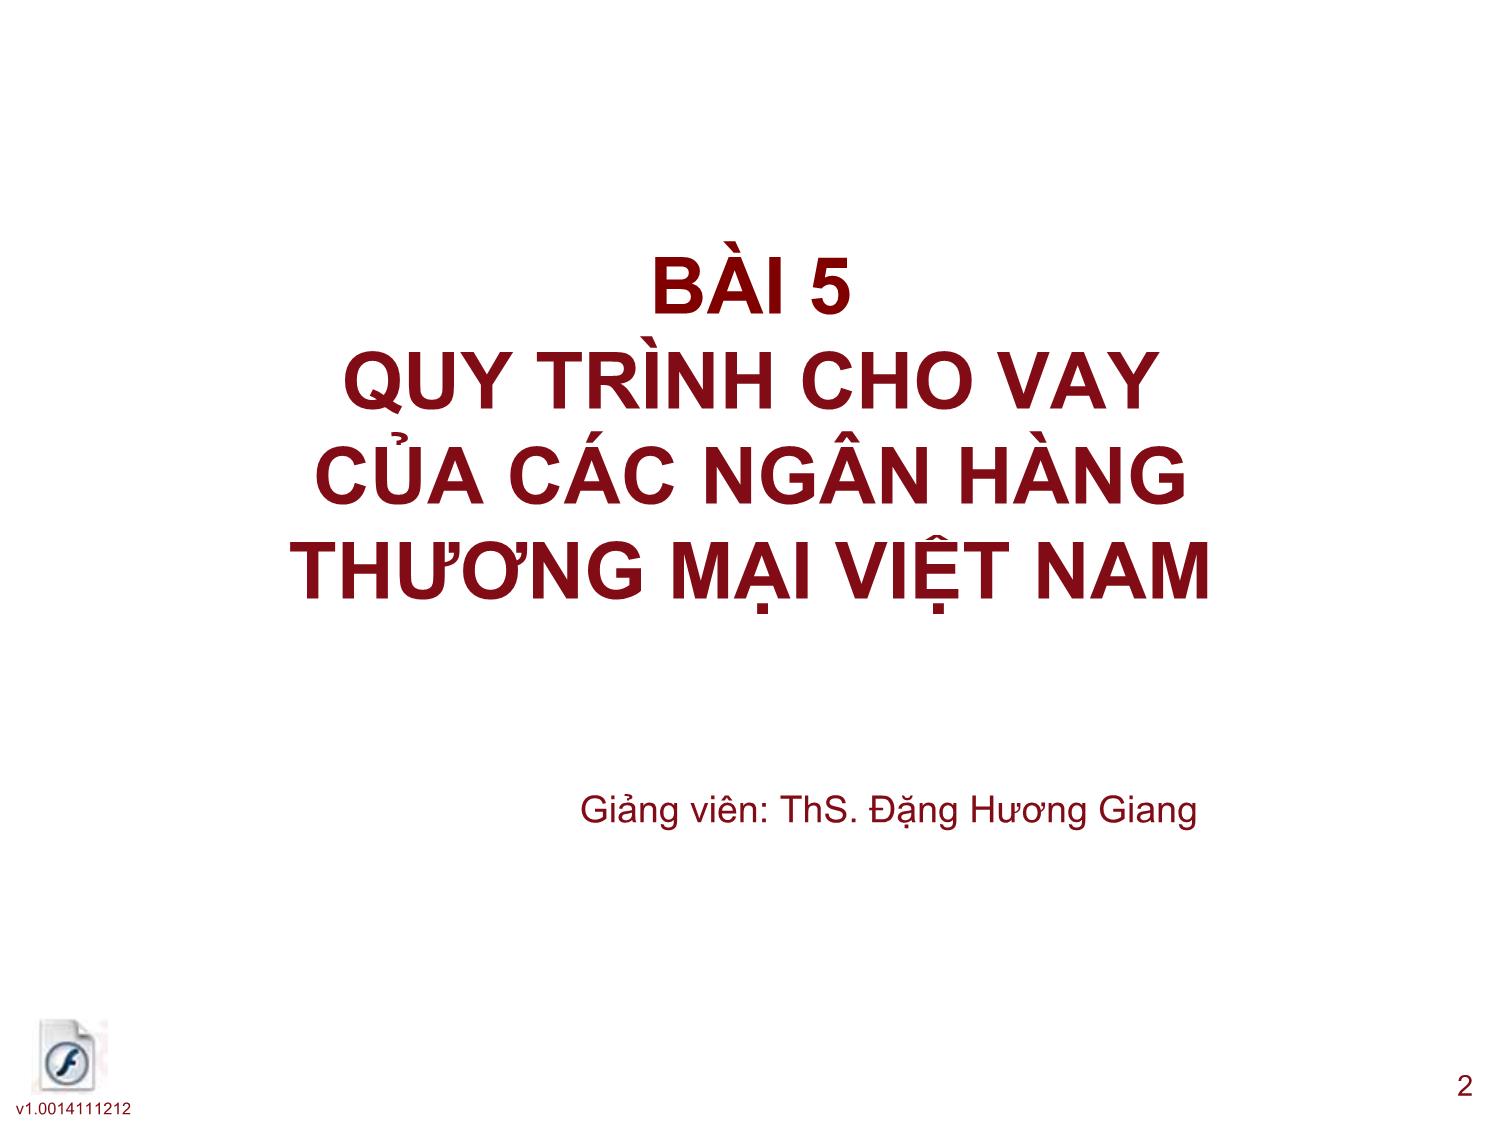 Tín dụng ngân hàng - Bài 5: Quy trình cho vay của các ngân hàng thương mại Việt Nam trang 2